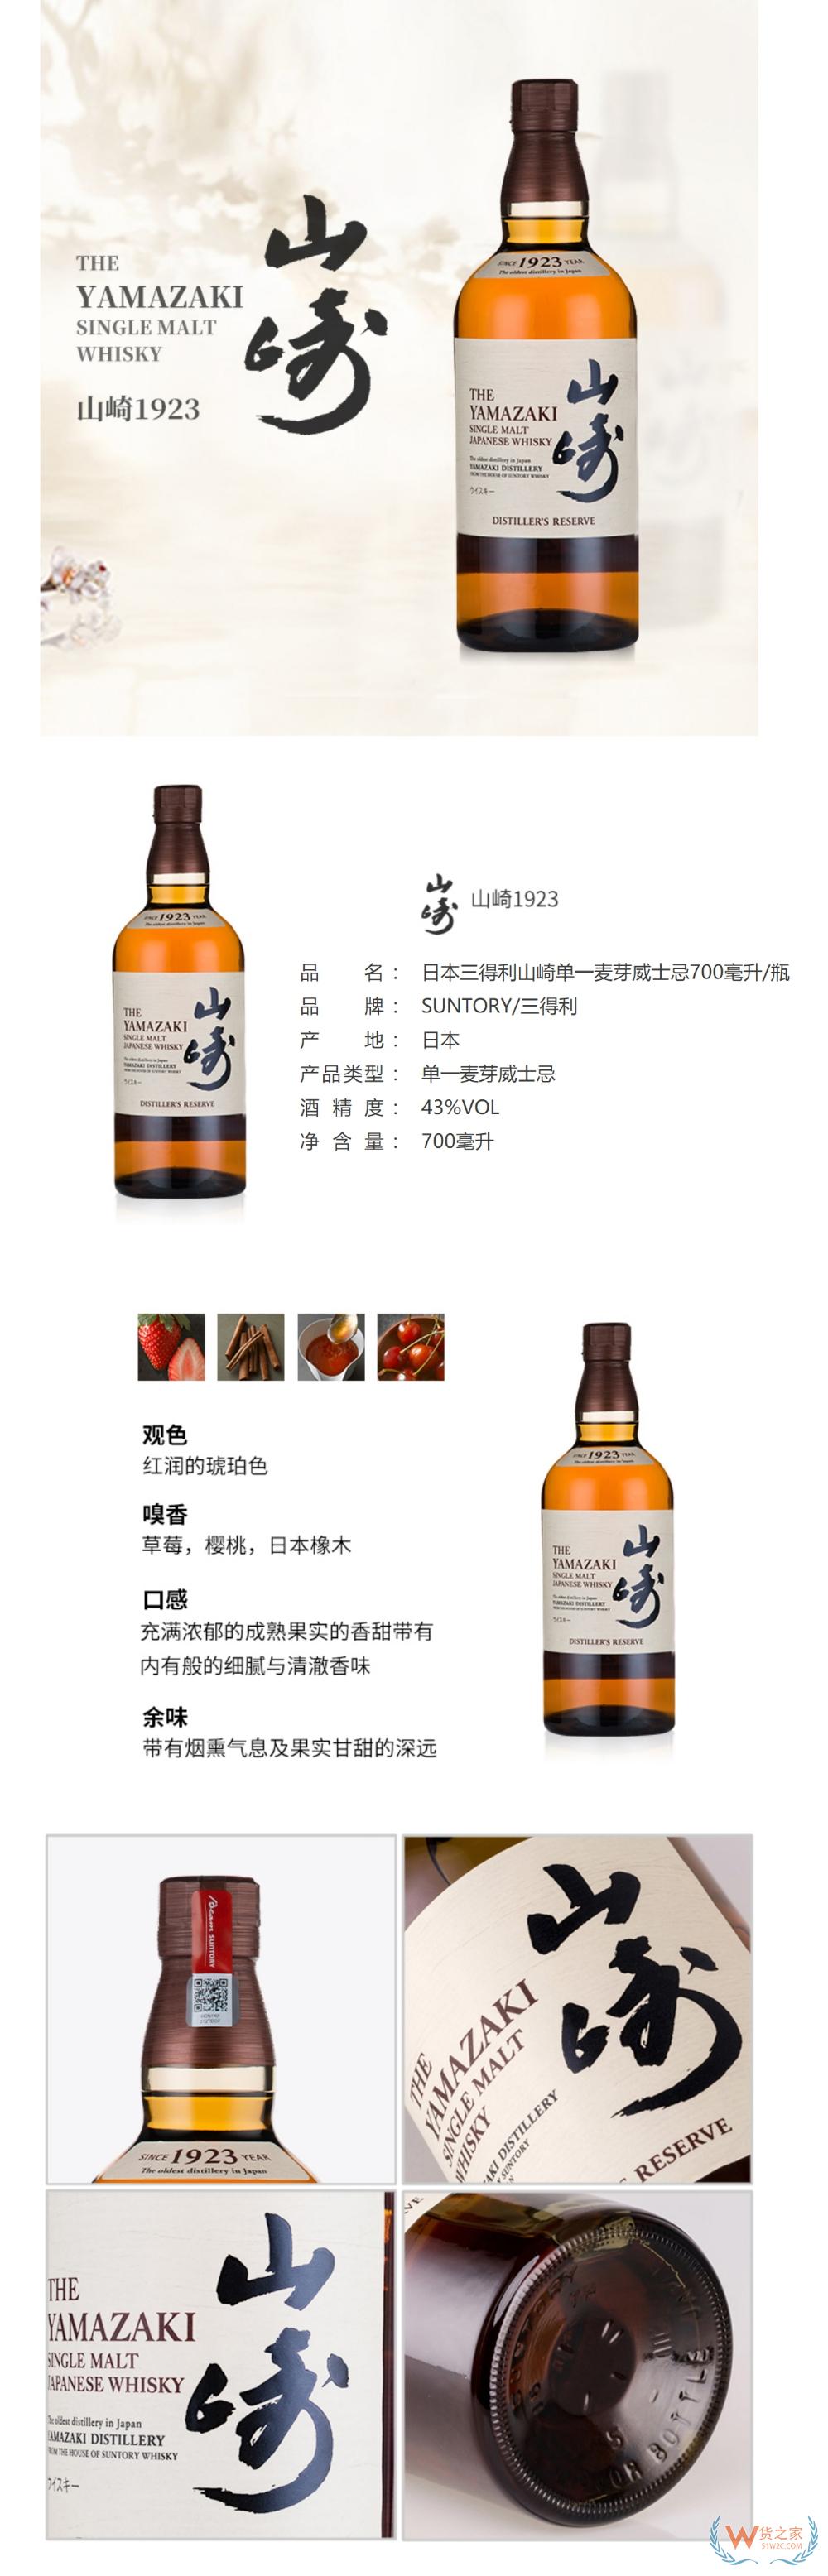 日本三得利山崎单一麦芽威士忌700毫升/瓶—货之家